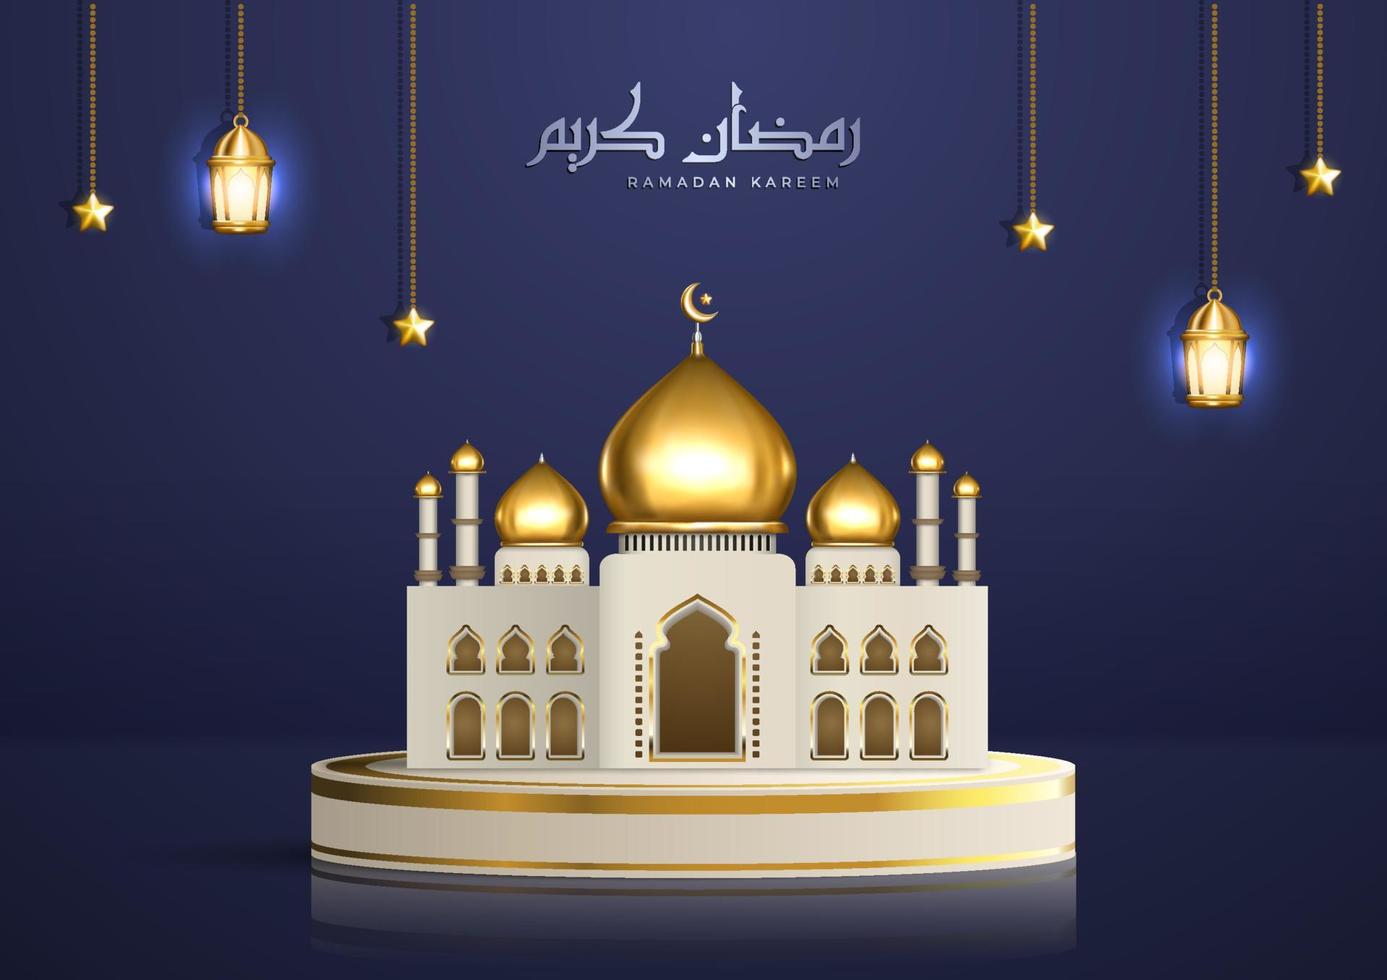 illustrazione islamica realistica con calligrafia araba e moschea dorata sul podio del prodotto. saluto del ramadan kareem con lanterne e stelle appese vettore